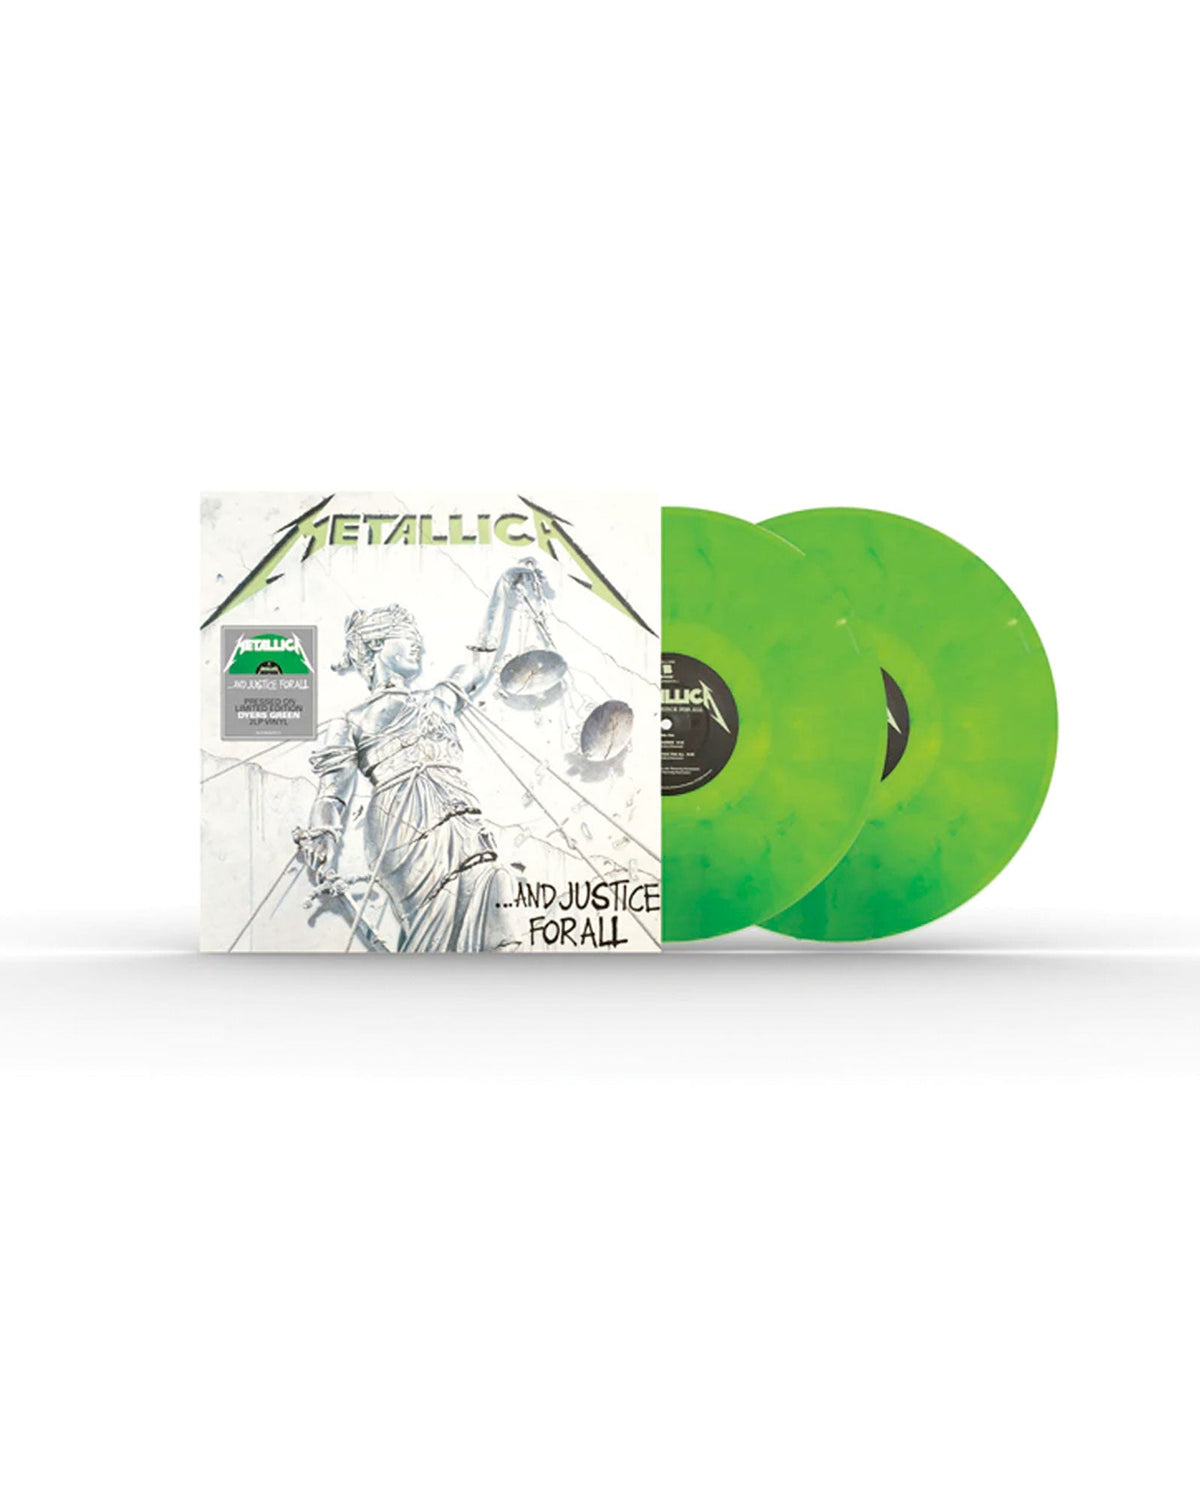 Metallica - 2 LP Vinilo Dyers Green "And Justice For All" - D2fy · Rocktud - Rocktud